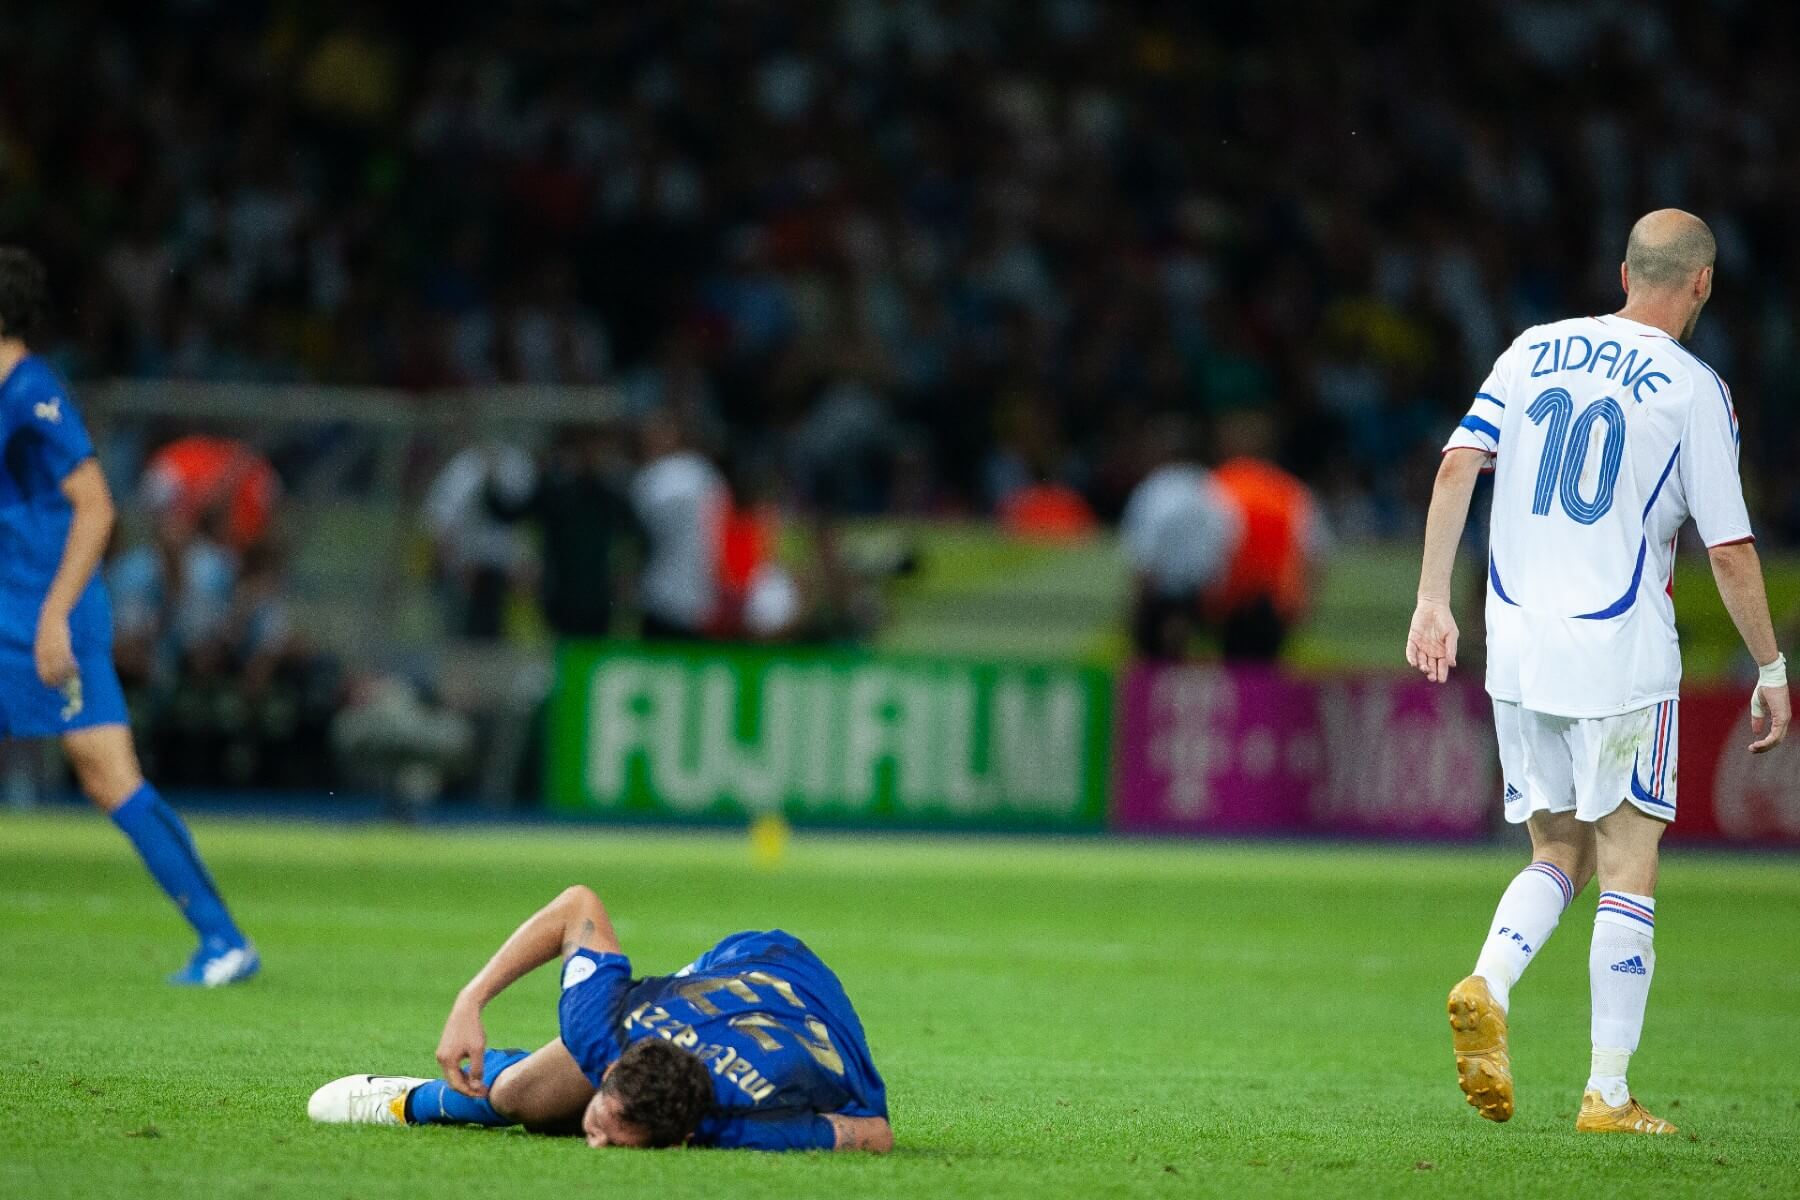 La carrera de Zidane terminó en desgracia (Foto: Getty Images)